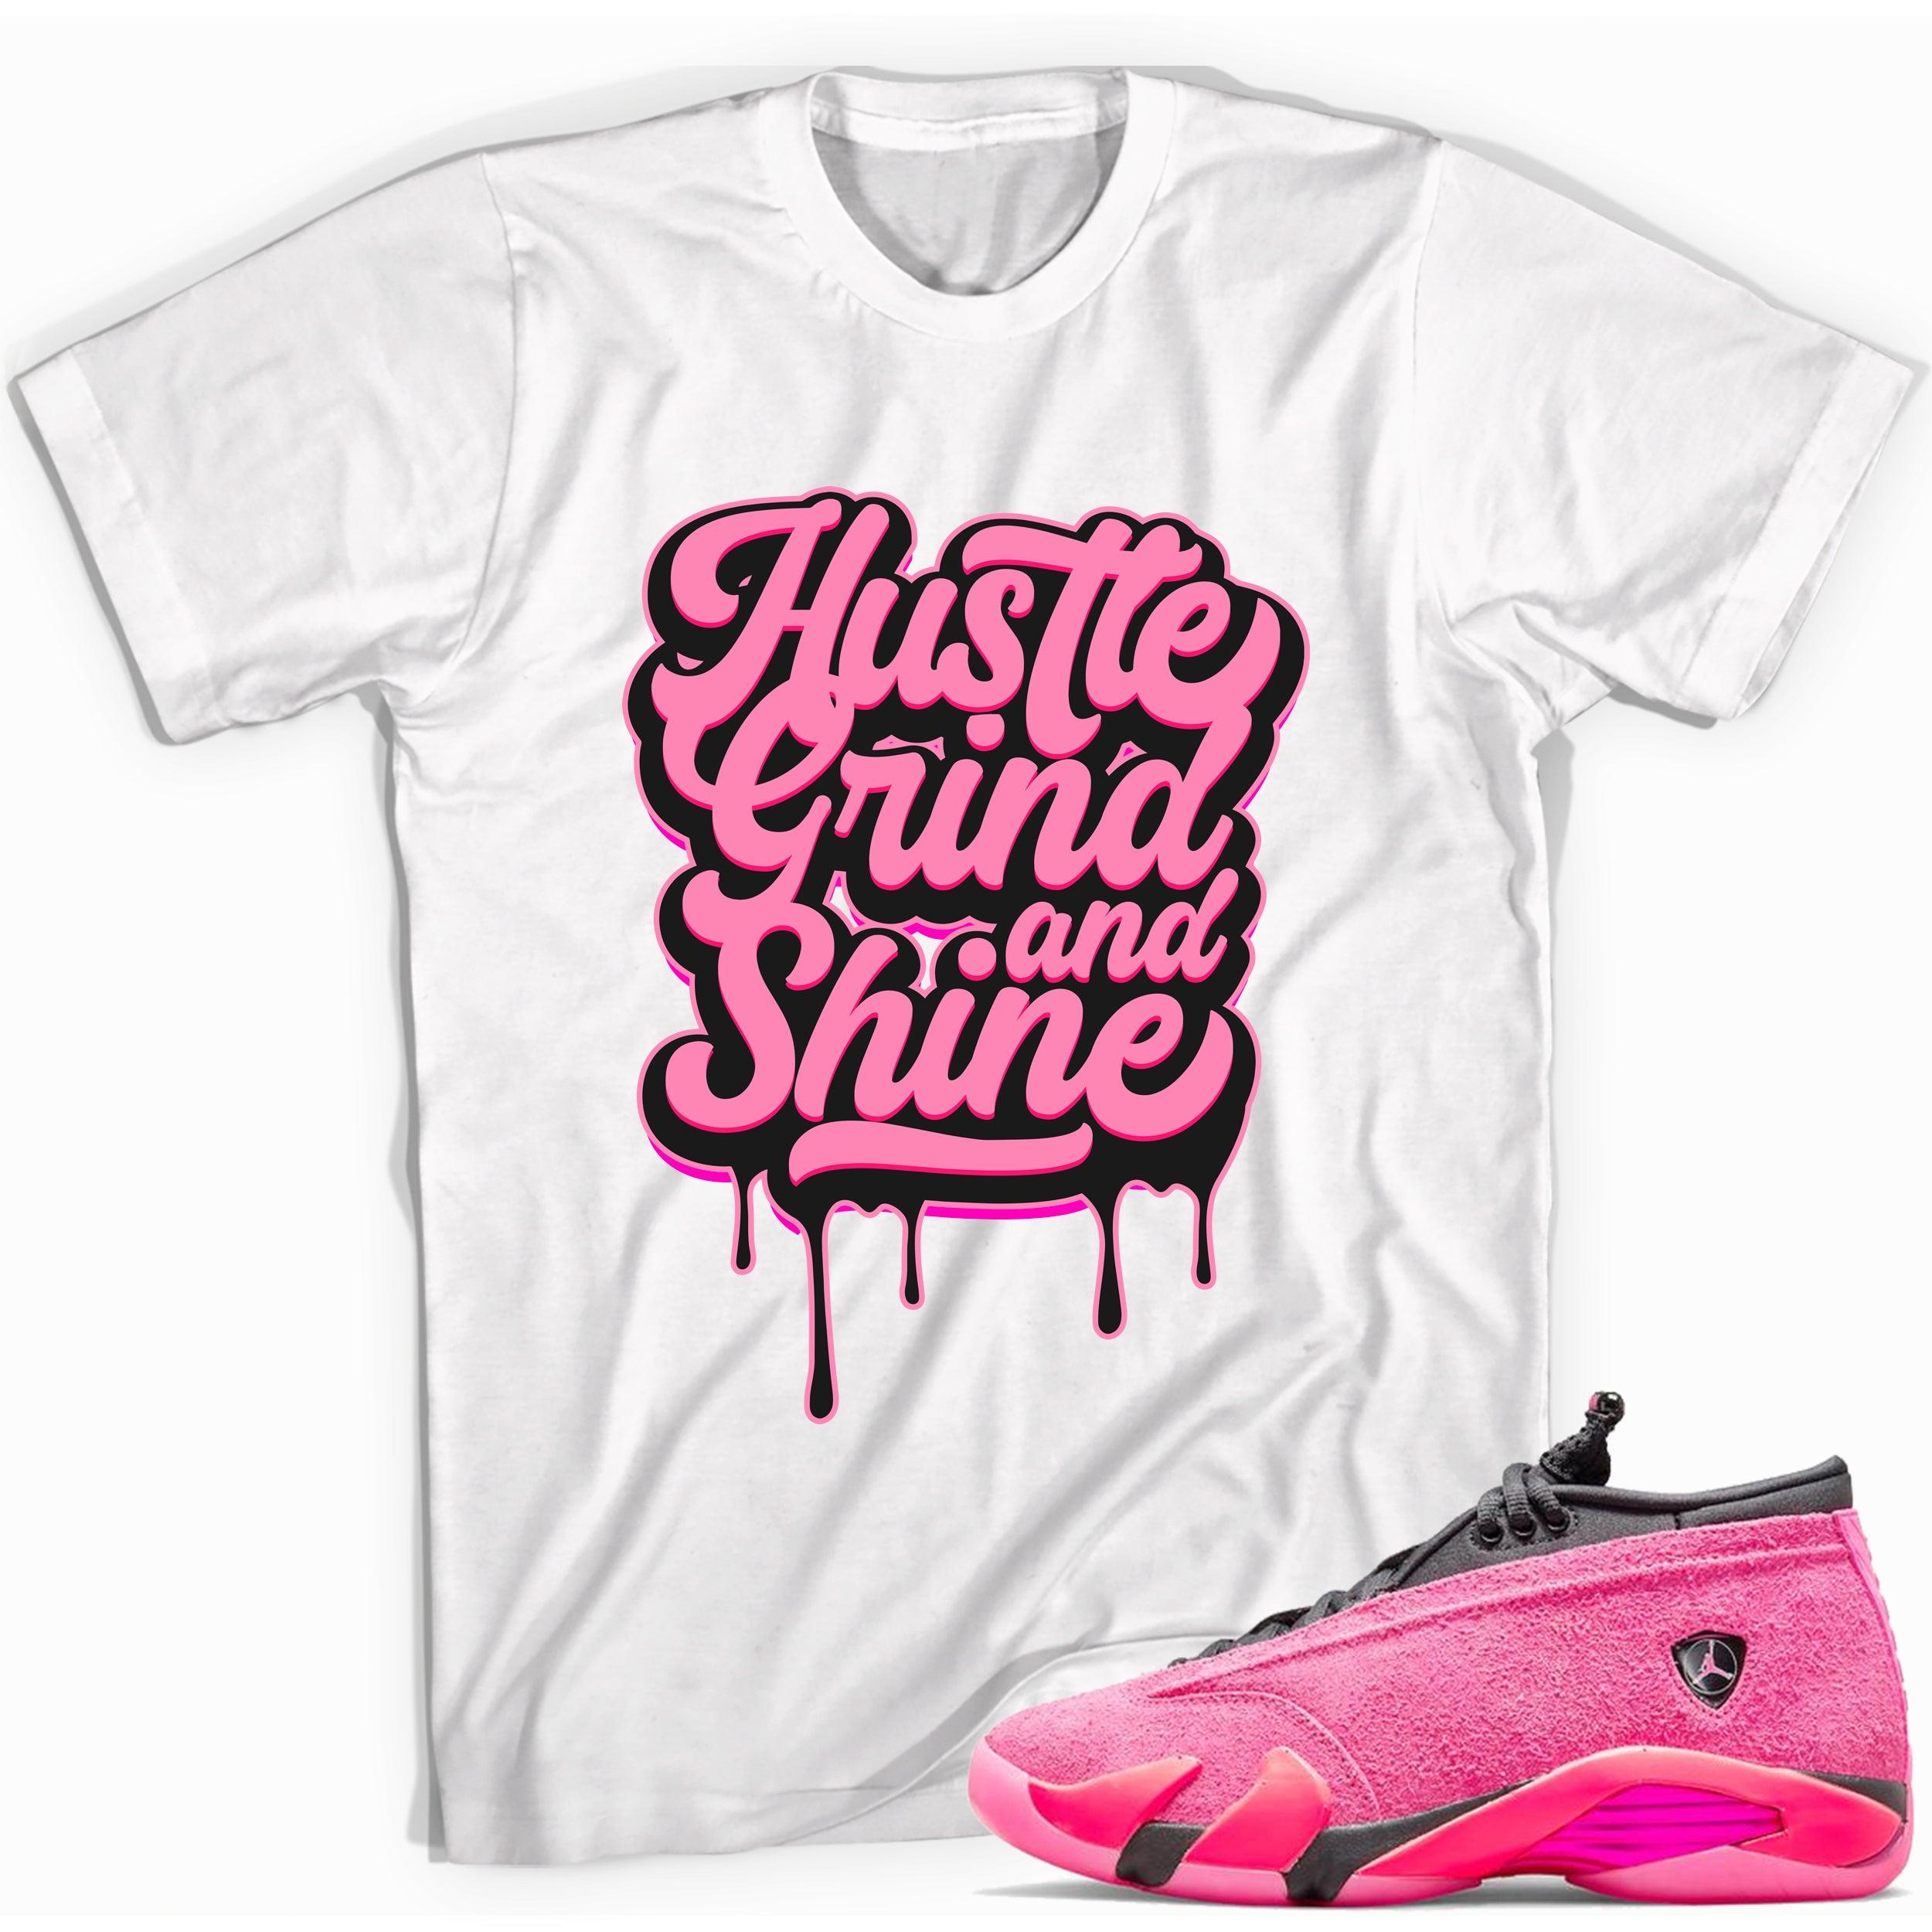 Hustle Grind Shine Shirt Jordan 14s Low Shocking Pink photo